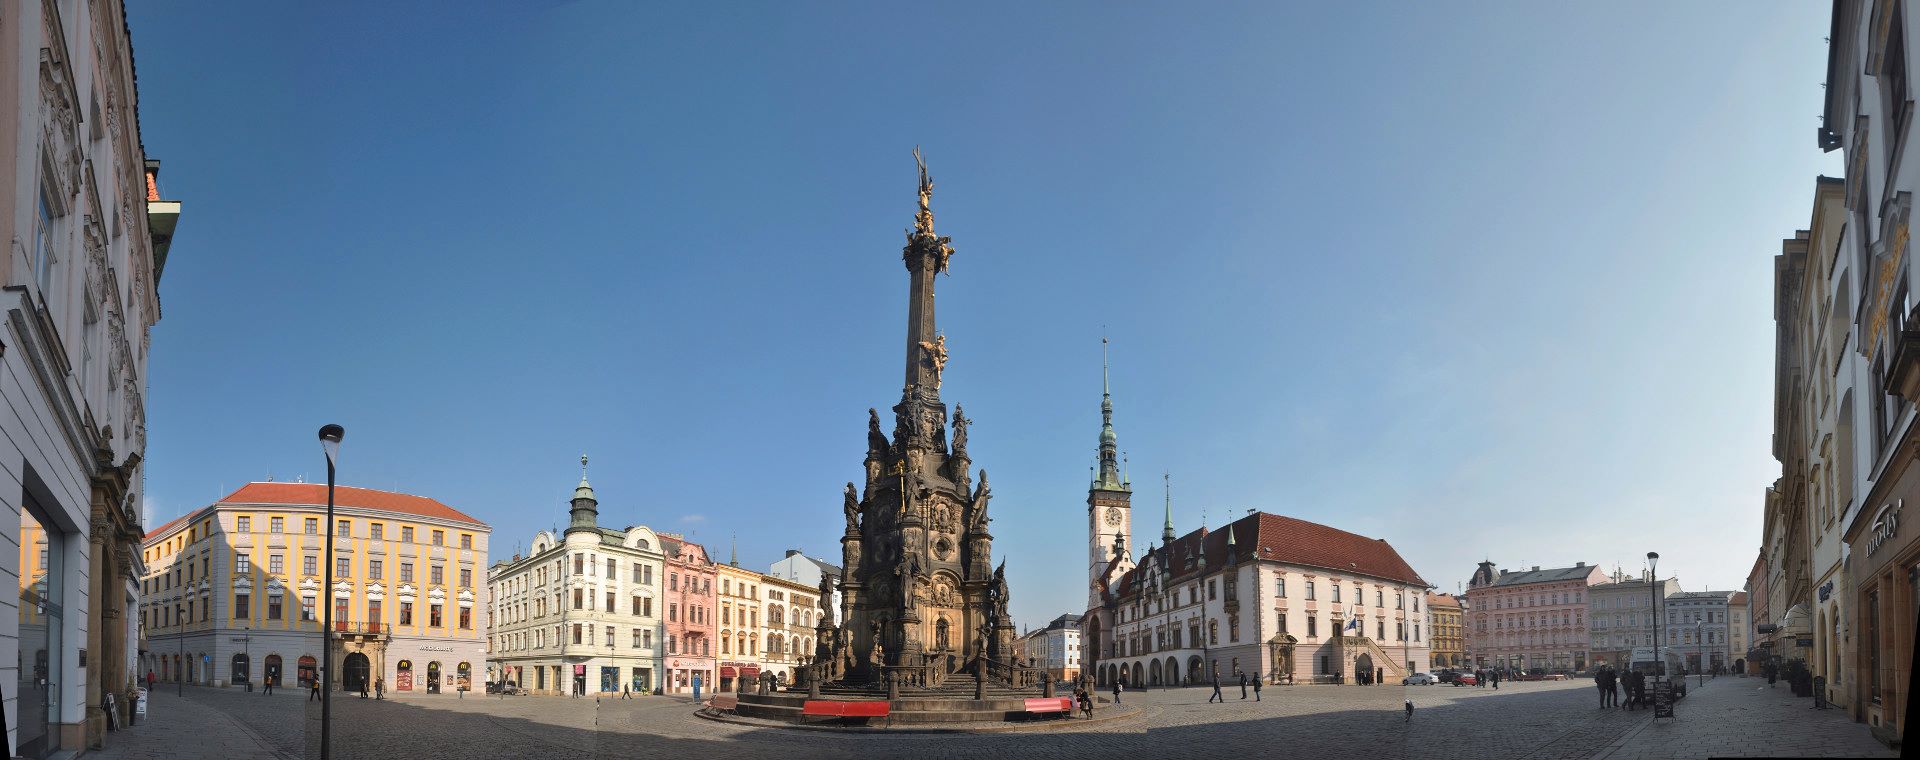   Der Oberring von Olmütz mit Dreifaltigkeitssäule und Rathaus  